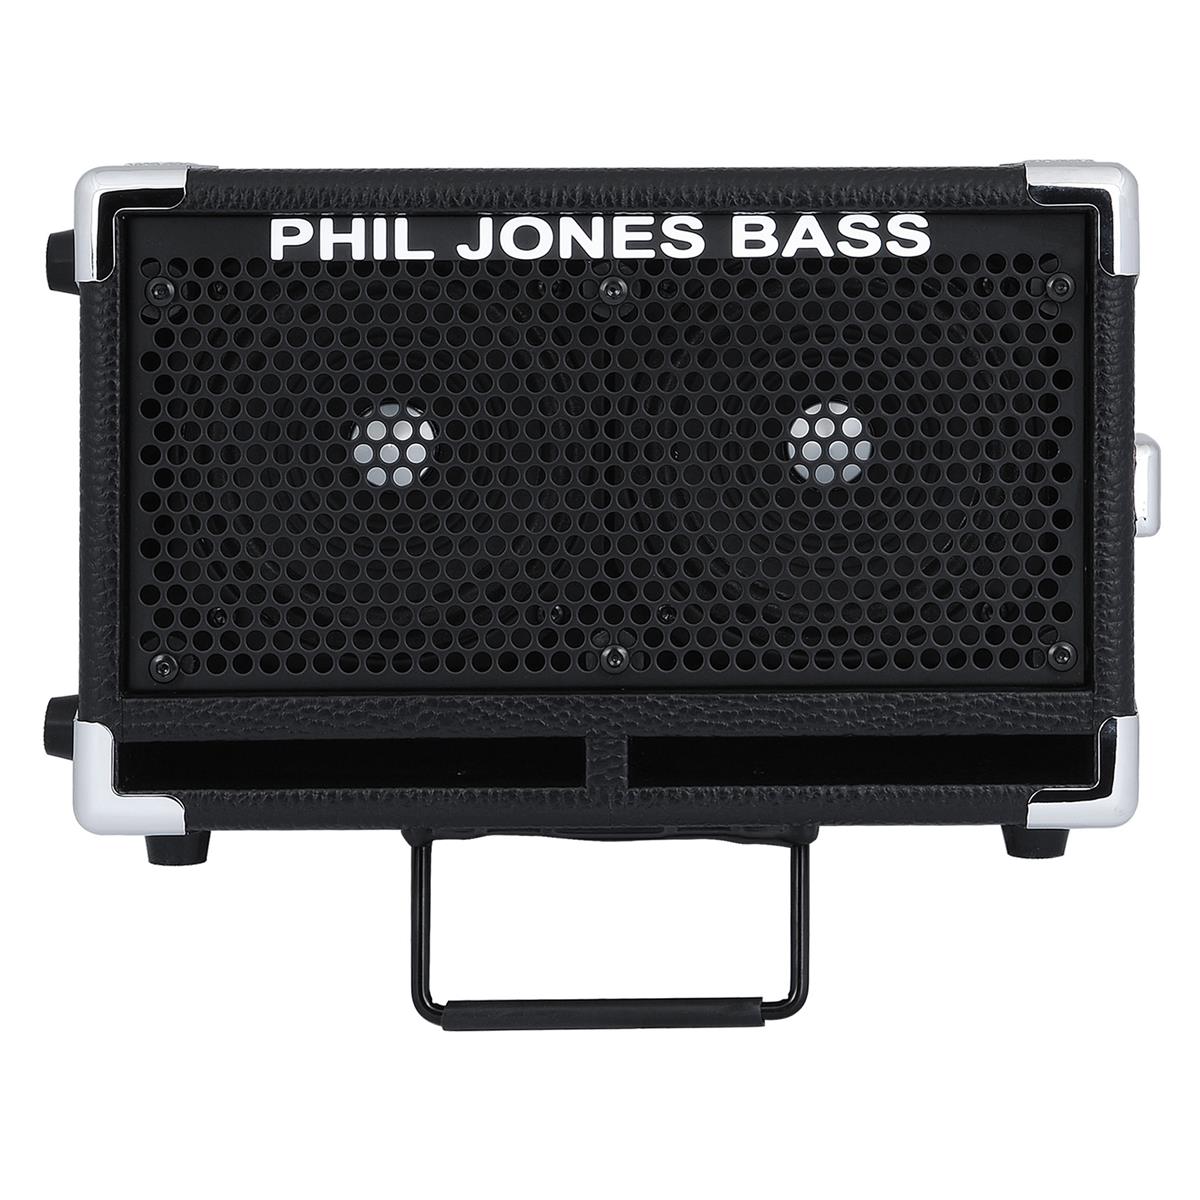 ass Cub II Bass Amplifier, Black - Phil Jones Bass BG-110 B